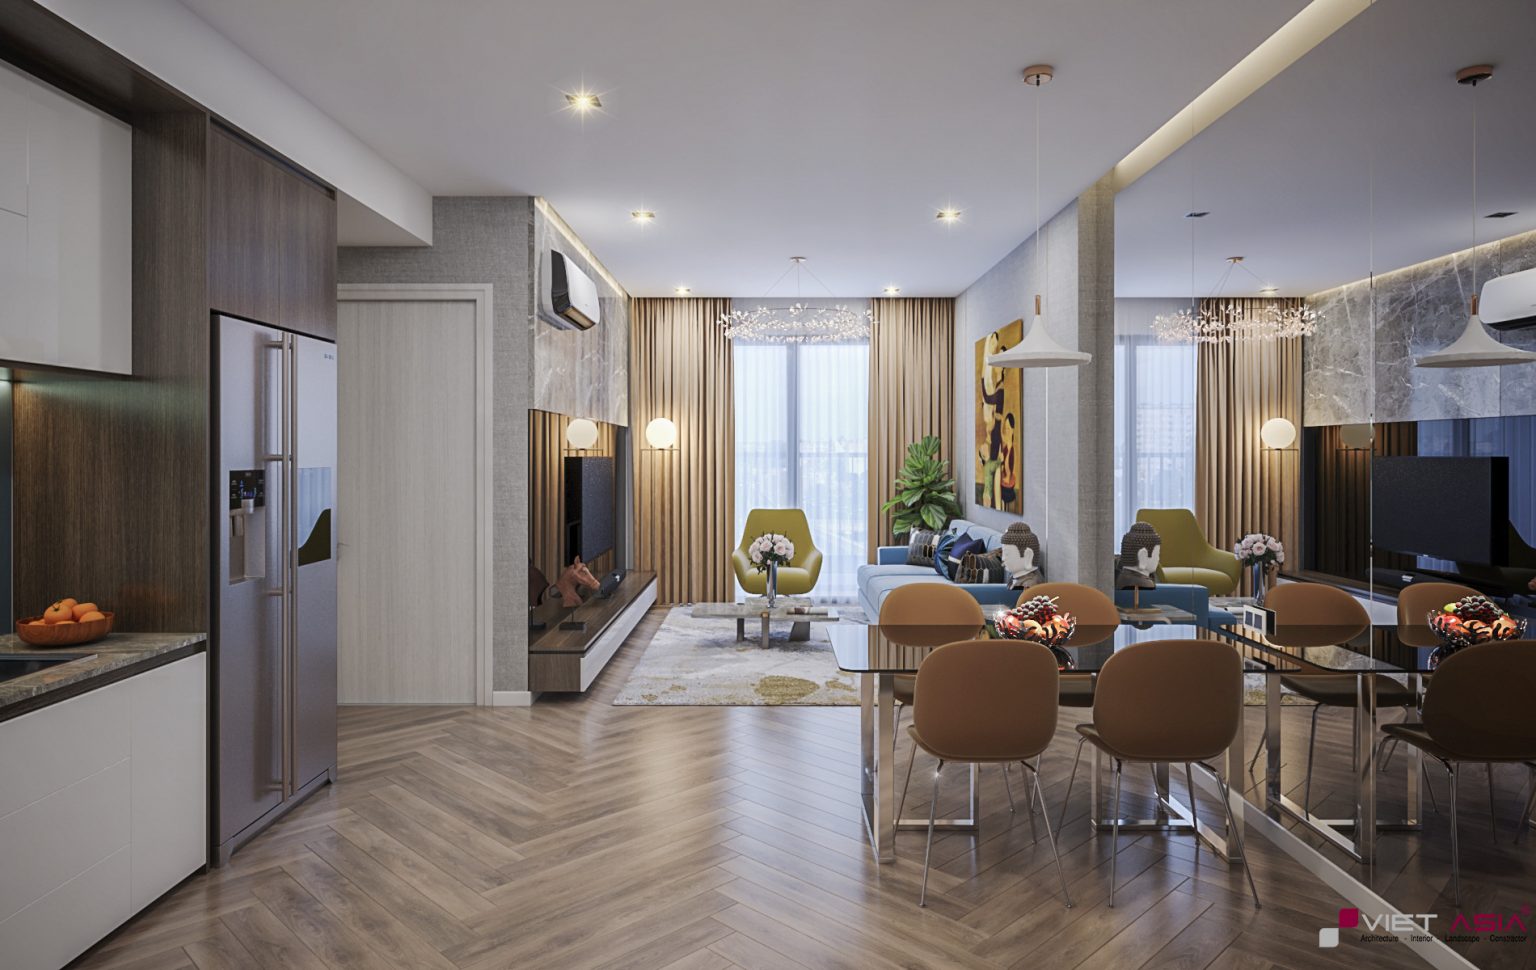 Hình ảnh thiết kế nhà mẫu căn hộ The Privia Khang Điền Bình Tân - Không gian bếp, bàn ăn mở